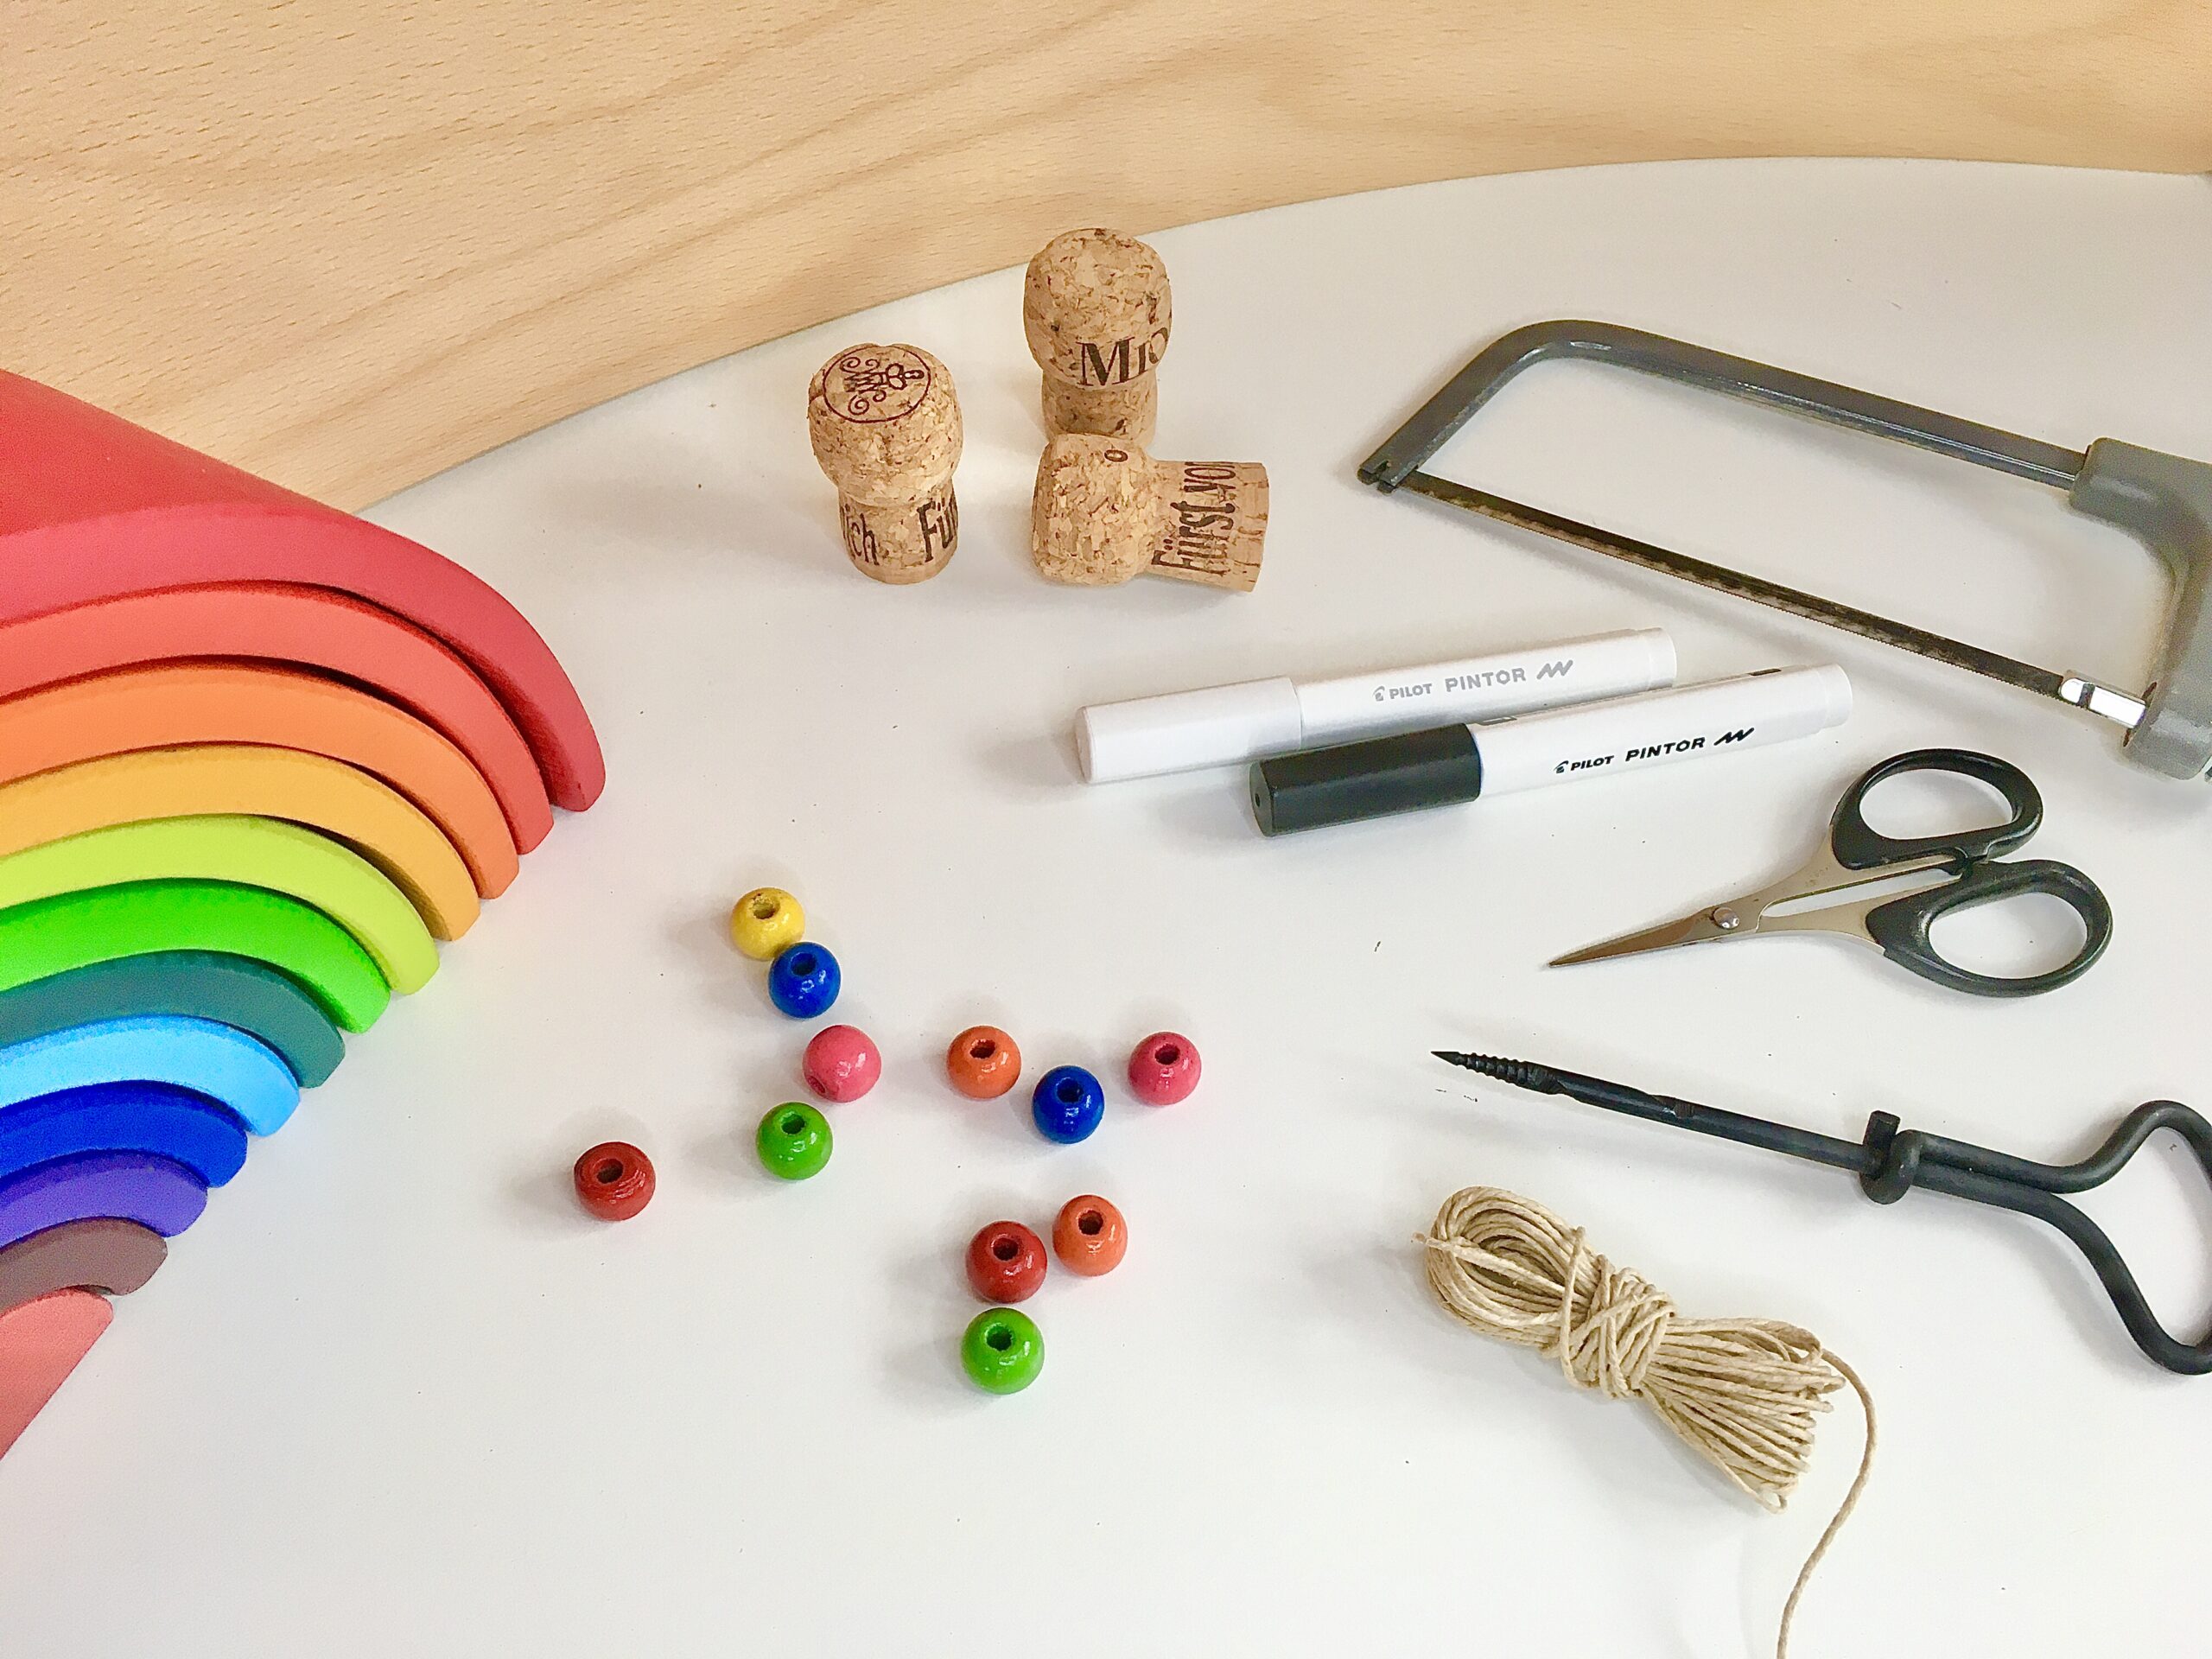 Regenbogen-Schlange aus Korken, Perlen, Spielzeug, #bastelnmitkindern #upcycling bunt, fantasiewerk.ch 